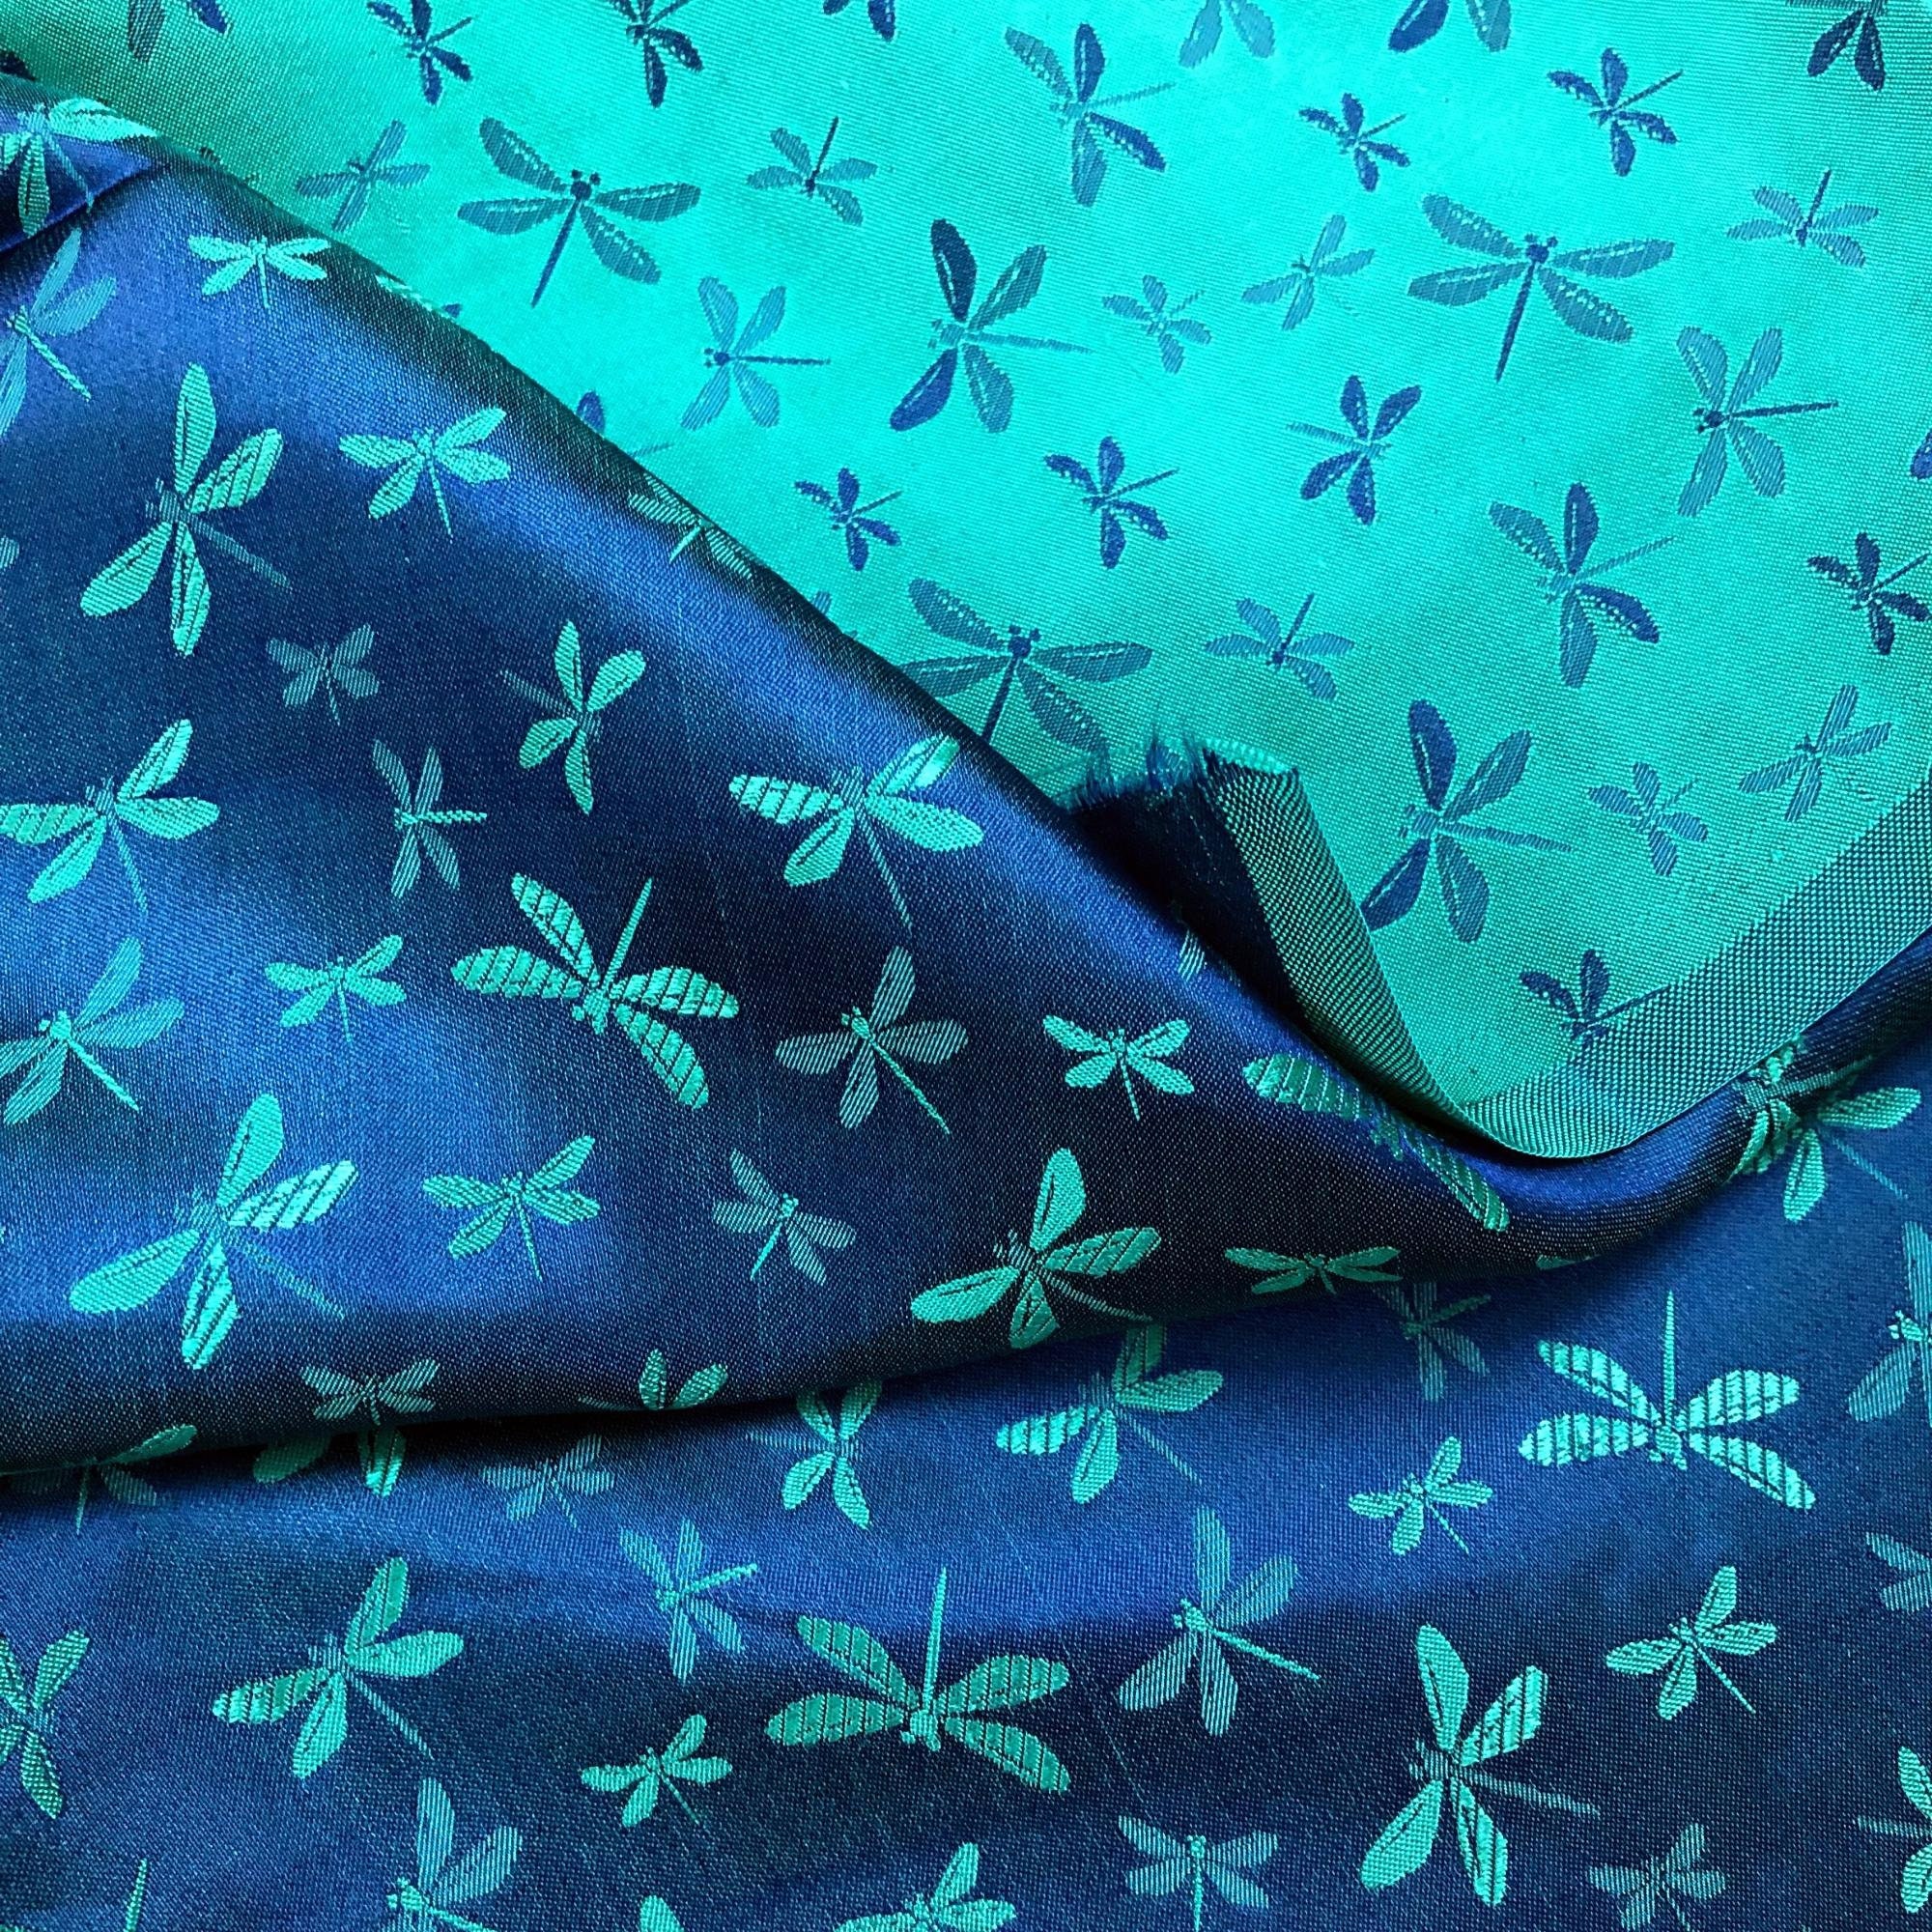 Vải Lụa Tơ Tằm hoa văn chuồn chuồn xanh cobal may áo dài, mềm#mượt#mịn, dệt thủ công, khổ vải 90cm